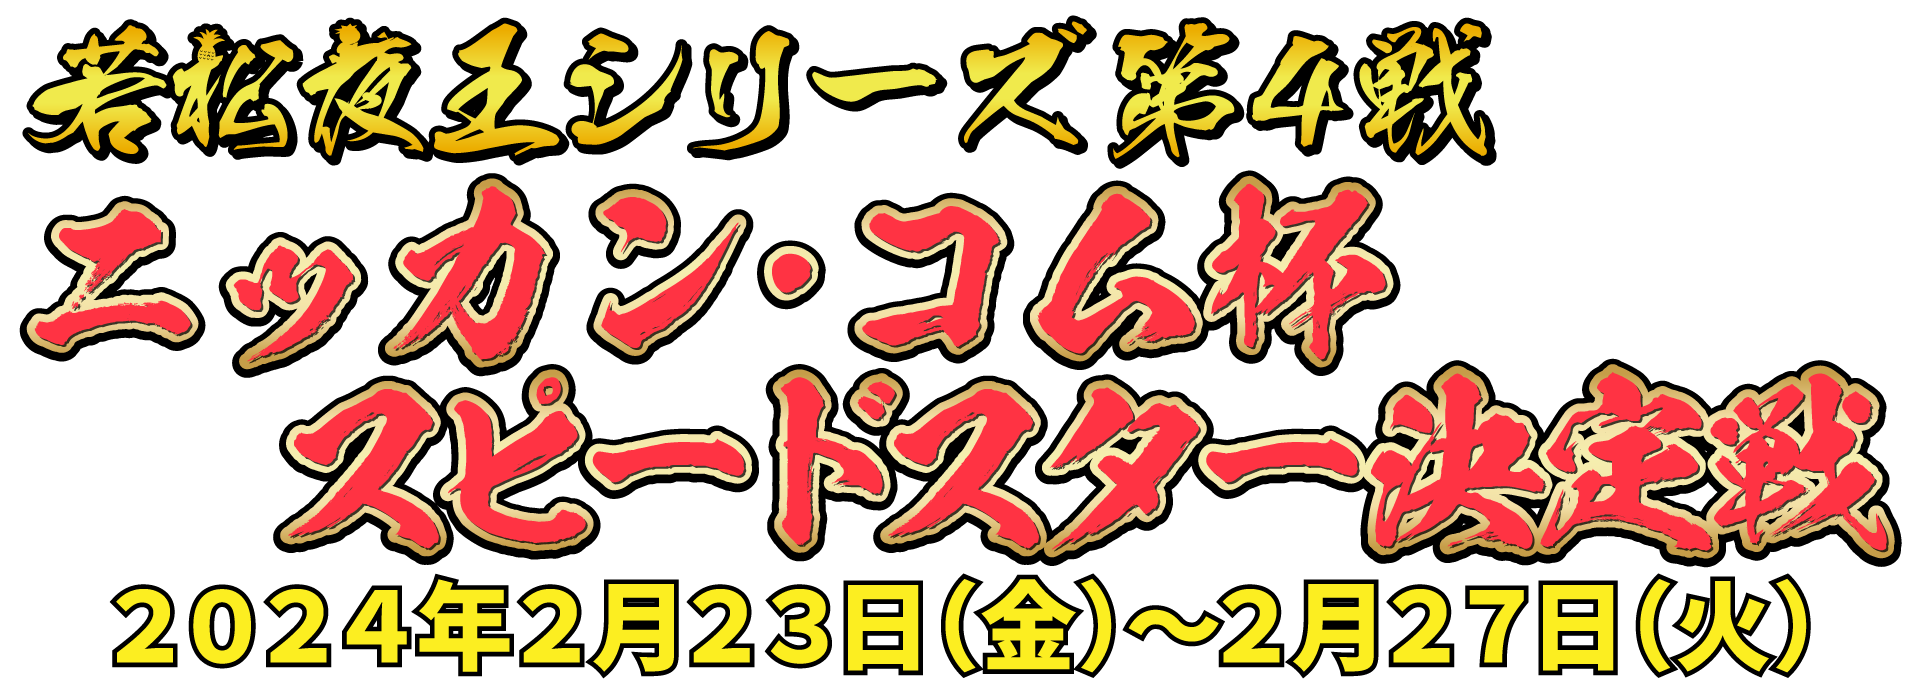 若松夜王シリーズ第4戦 ニッカン・コム杯スピードスター決定戦 2024年2月23日(祝・金)〜2月27日(金)